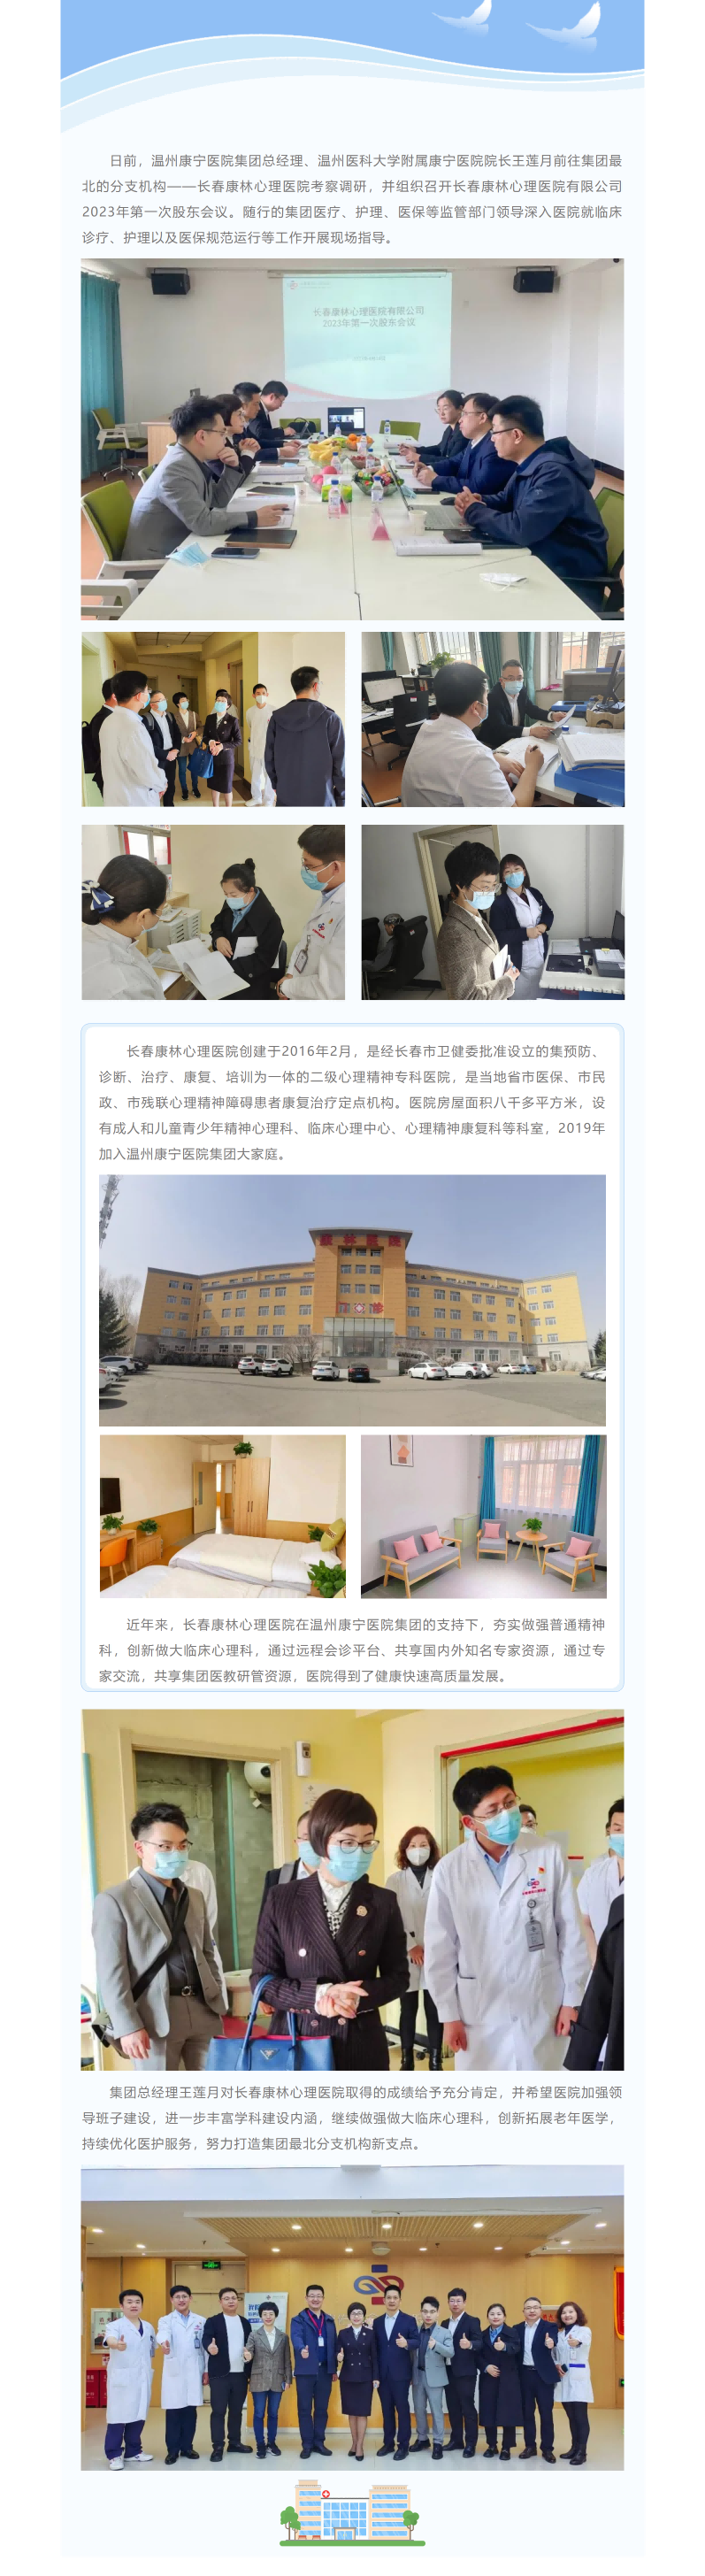 创新求进 _ 长春康林心理医院打造集团东北新支点(1).png